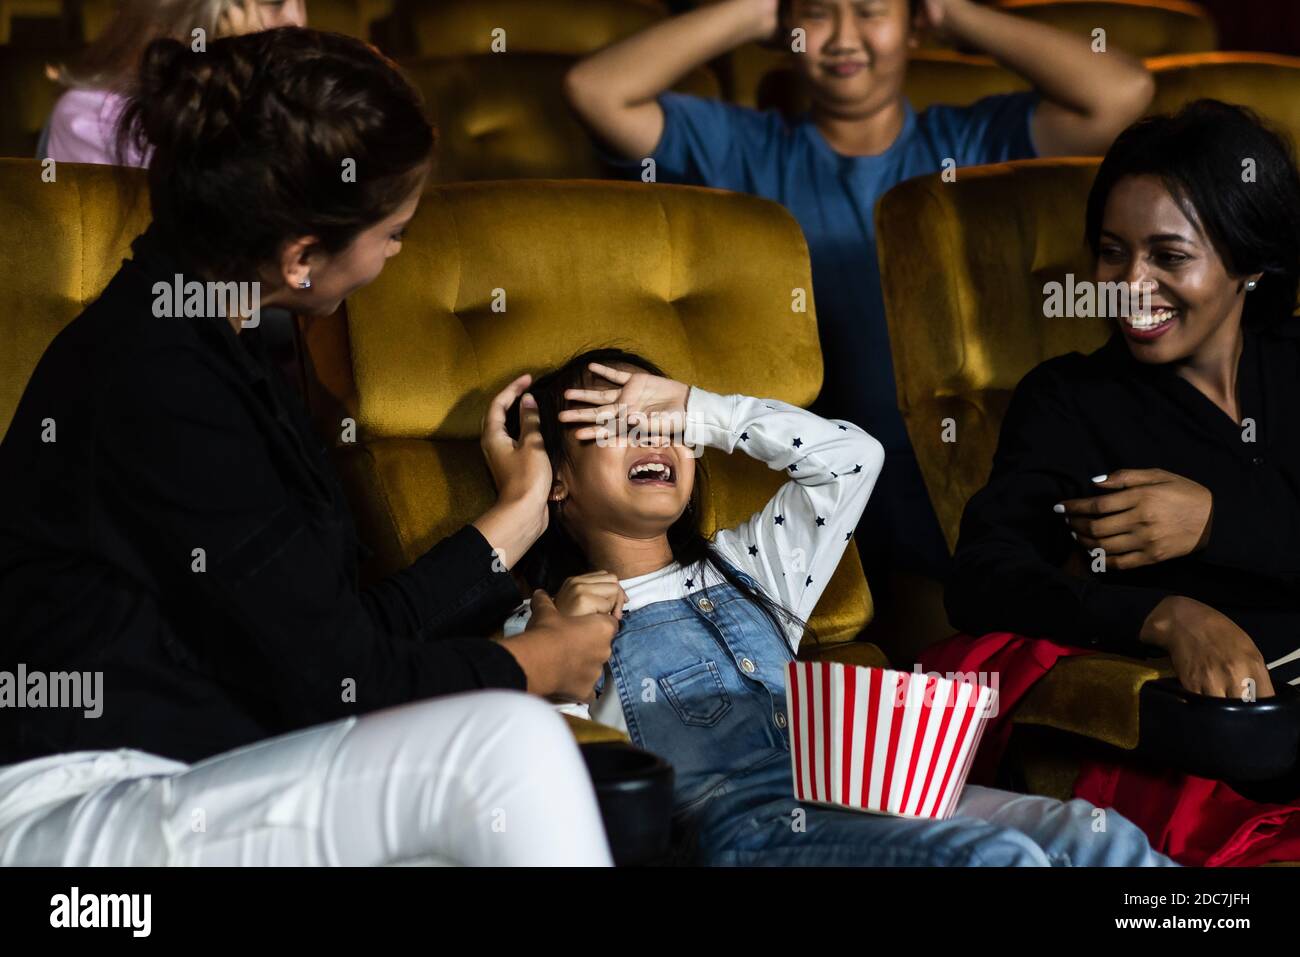 Le ragazze gridavano forte nel cinema, causando fastidio alle persone che siedono accanto e dietro di loro. Foto Stock